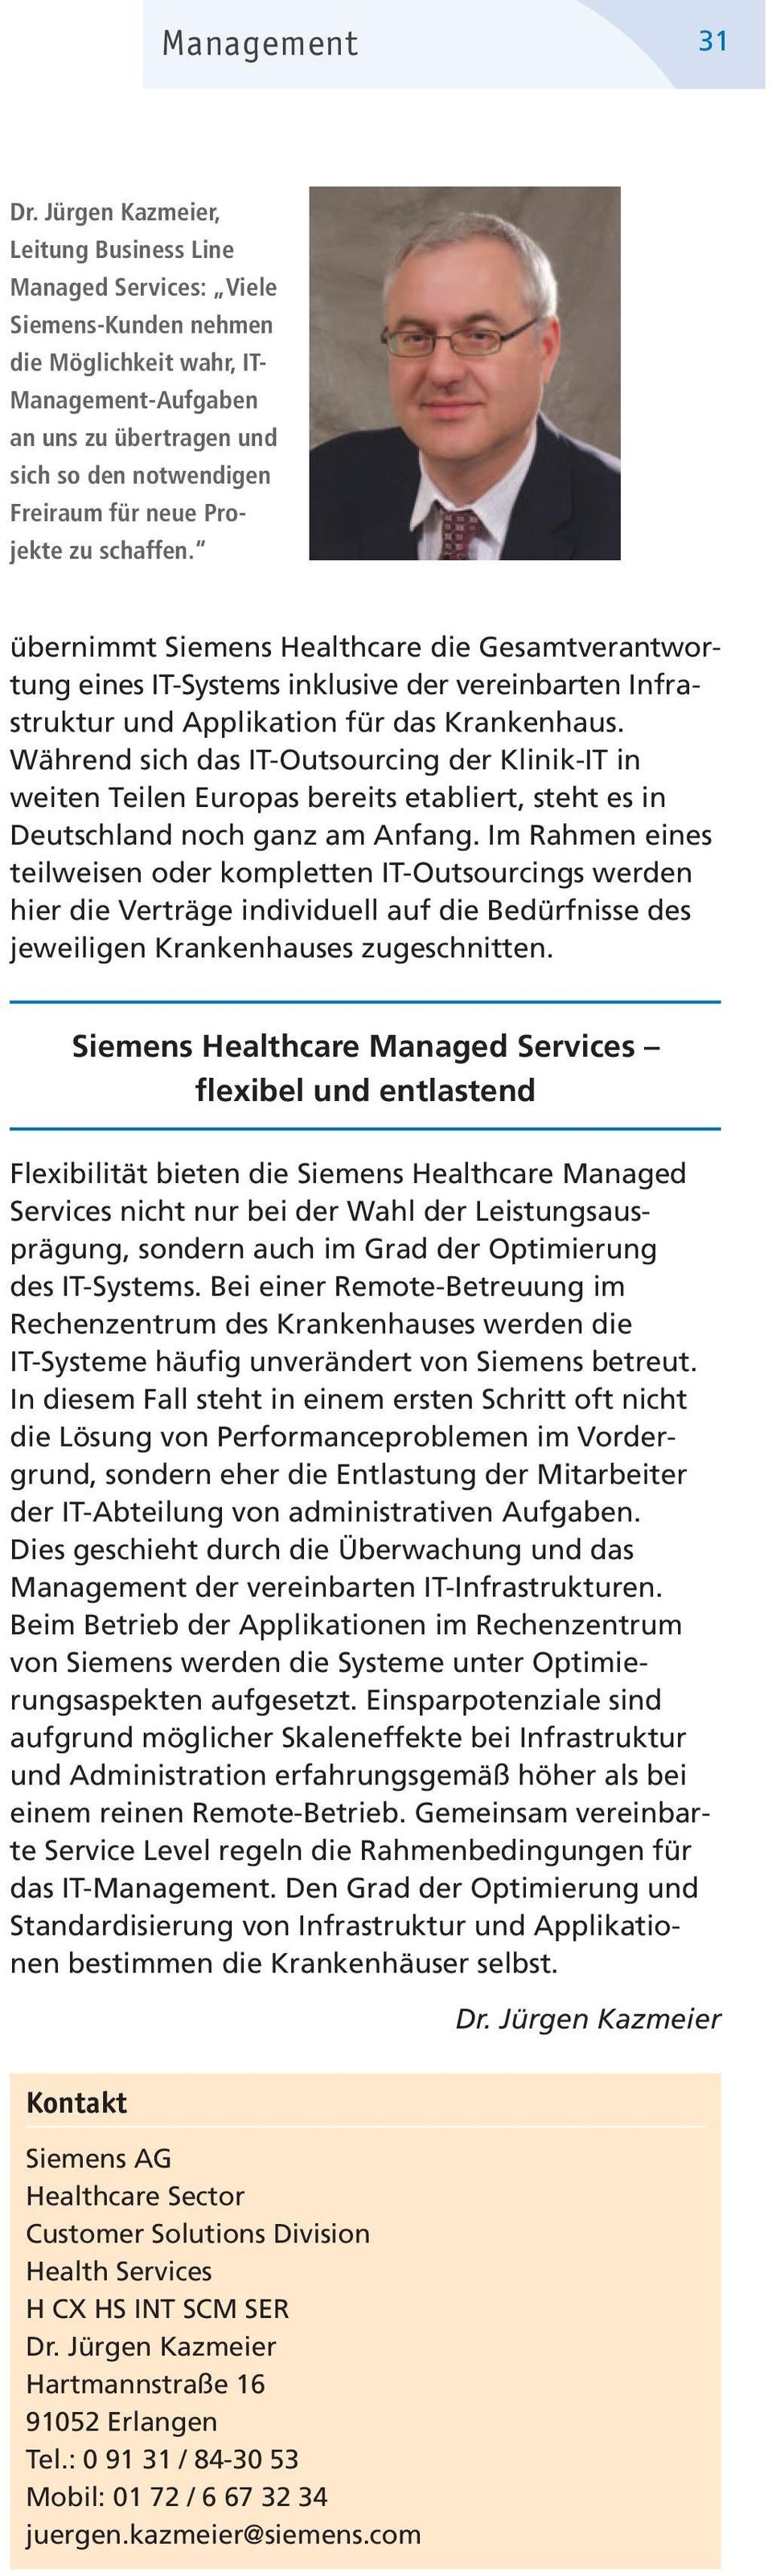 Pro - jekte zu schaffen. übernimmt Siemens Healthcare die Gesamtverantwortung eines IT- Systems inklusive der vereinbarten Infrastruktur und Applikation für das Krankenhaus.